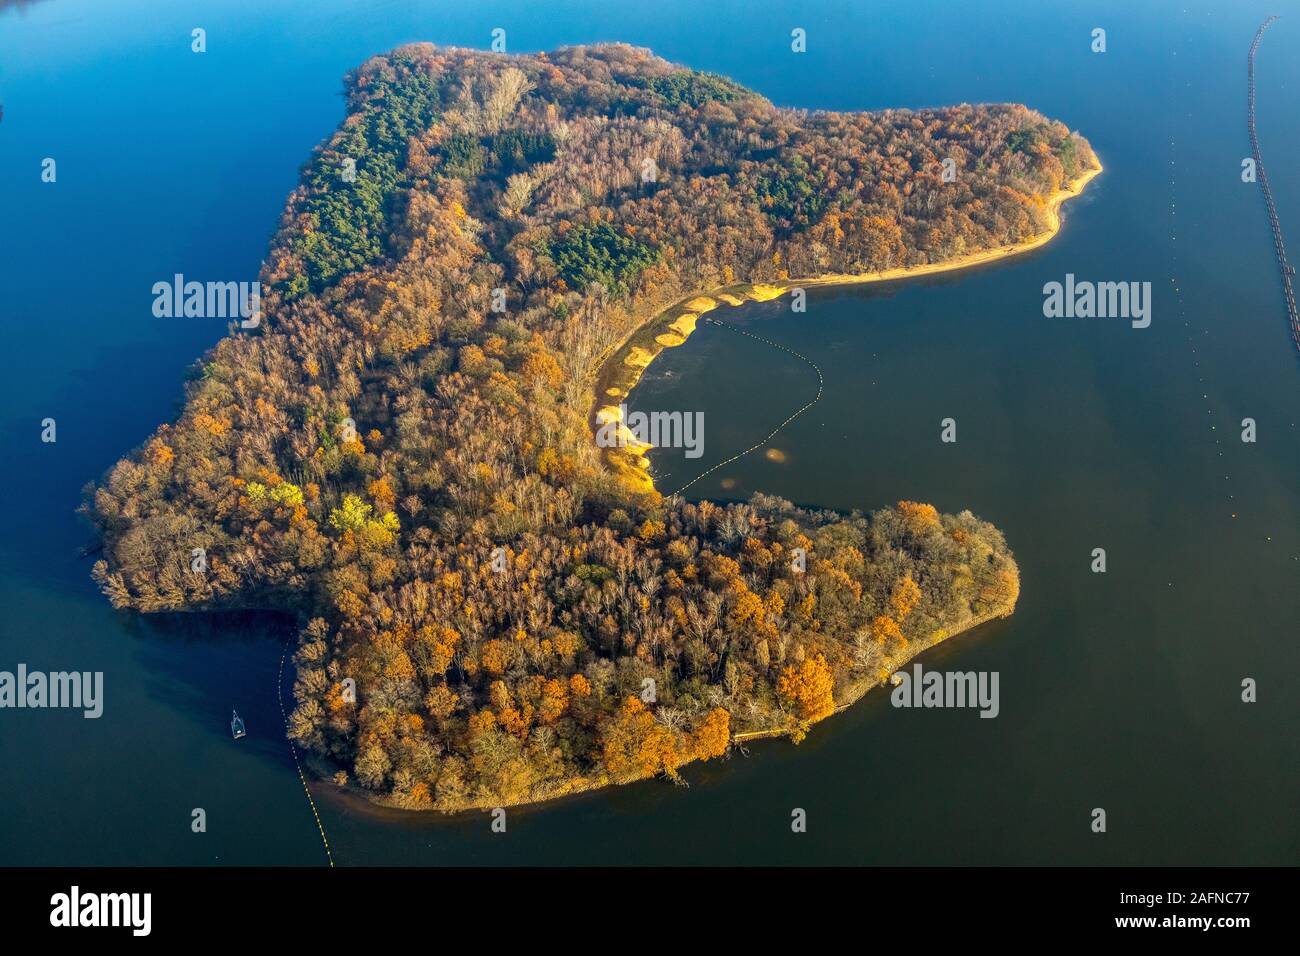 Foto aerea, bosco misto al lago, isola di serbatoio in Halterner Stausee, Haltern am See, la zona della Ruhr, Renania settentrionale-Vestfalia, Germania, DE, Eur Foto Stock